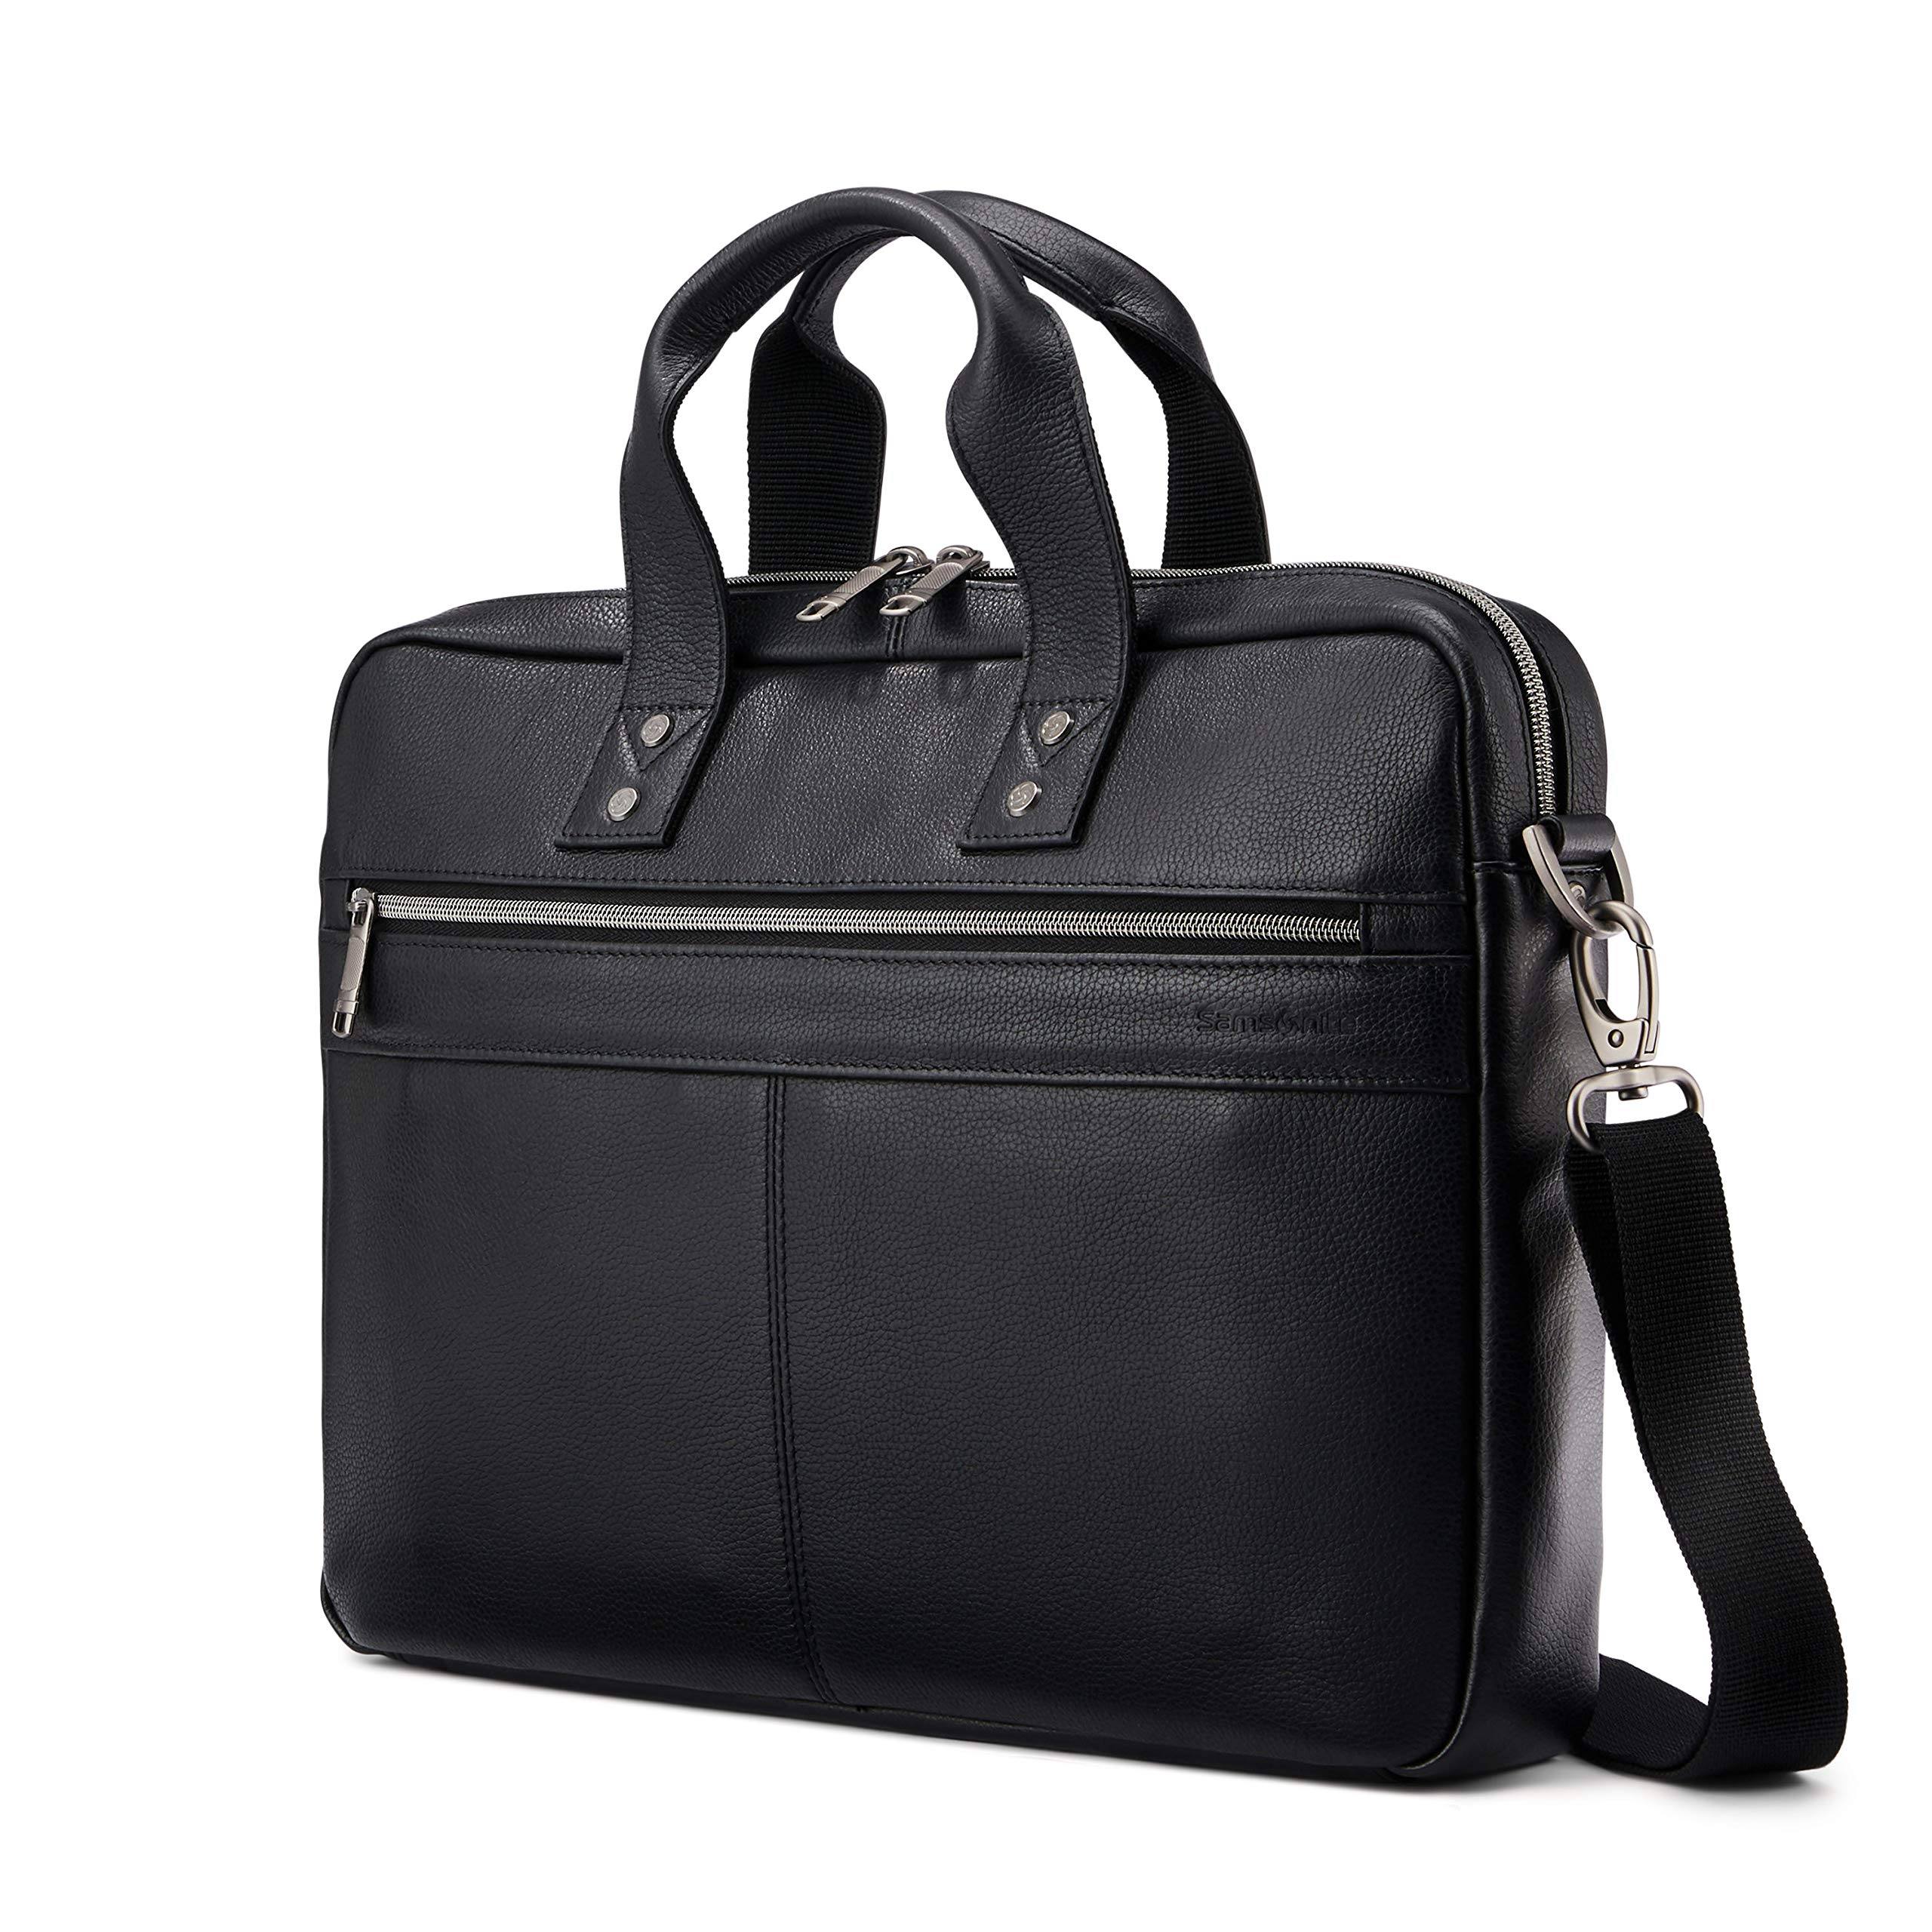 Samsonite Classic Leather Slim Brief – Luggage Online